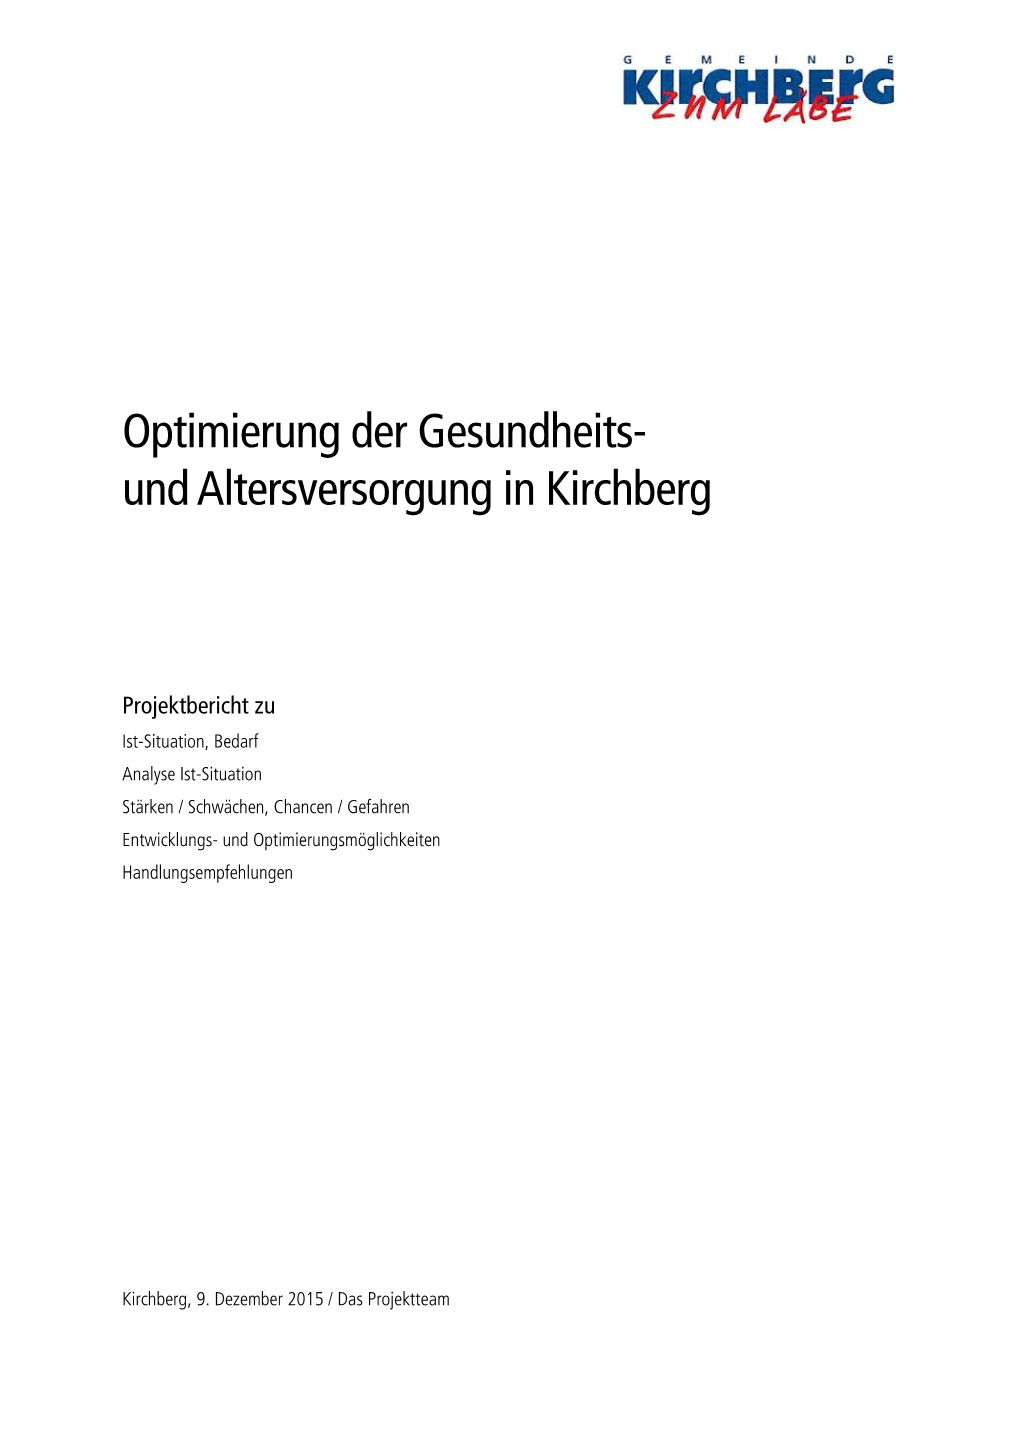 Optimierung Der Gesundheits- Und Altersversorgung in Kirchberg